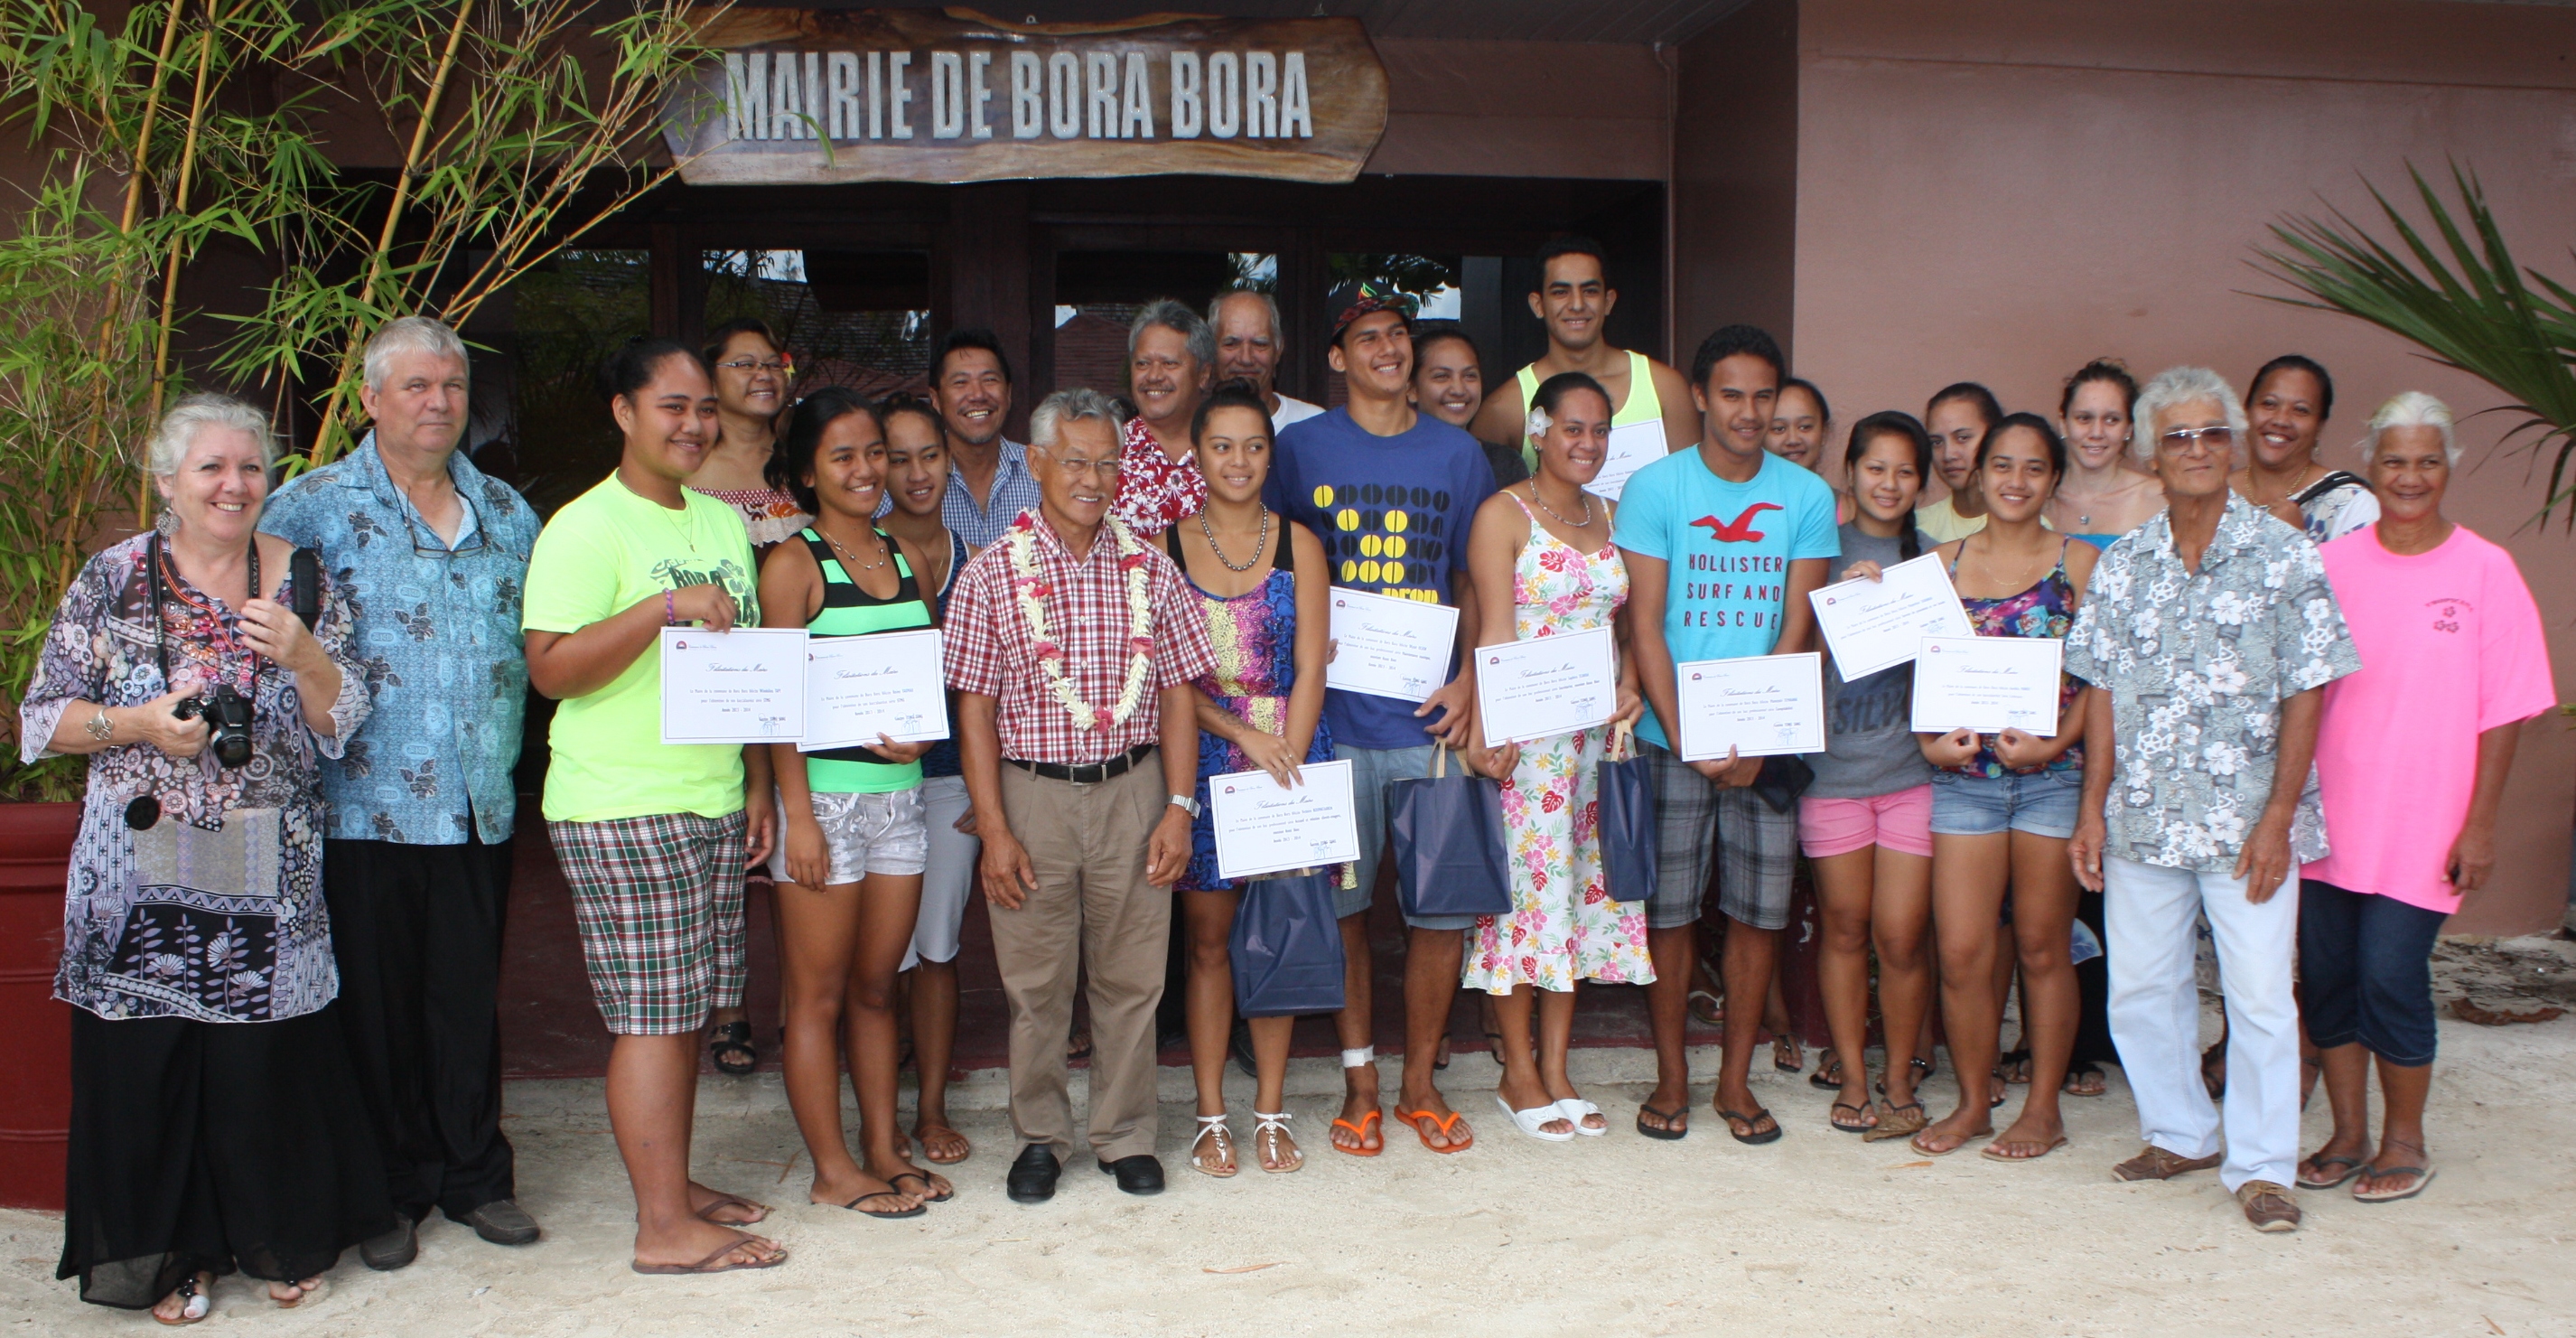 Les élèves nouvellement bacheliers posent fièrement, attestation en main, en compagnie du maire, Gaston Tong Sang, et des membres du conseil municipal de Bora Bora.